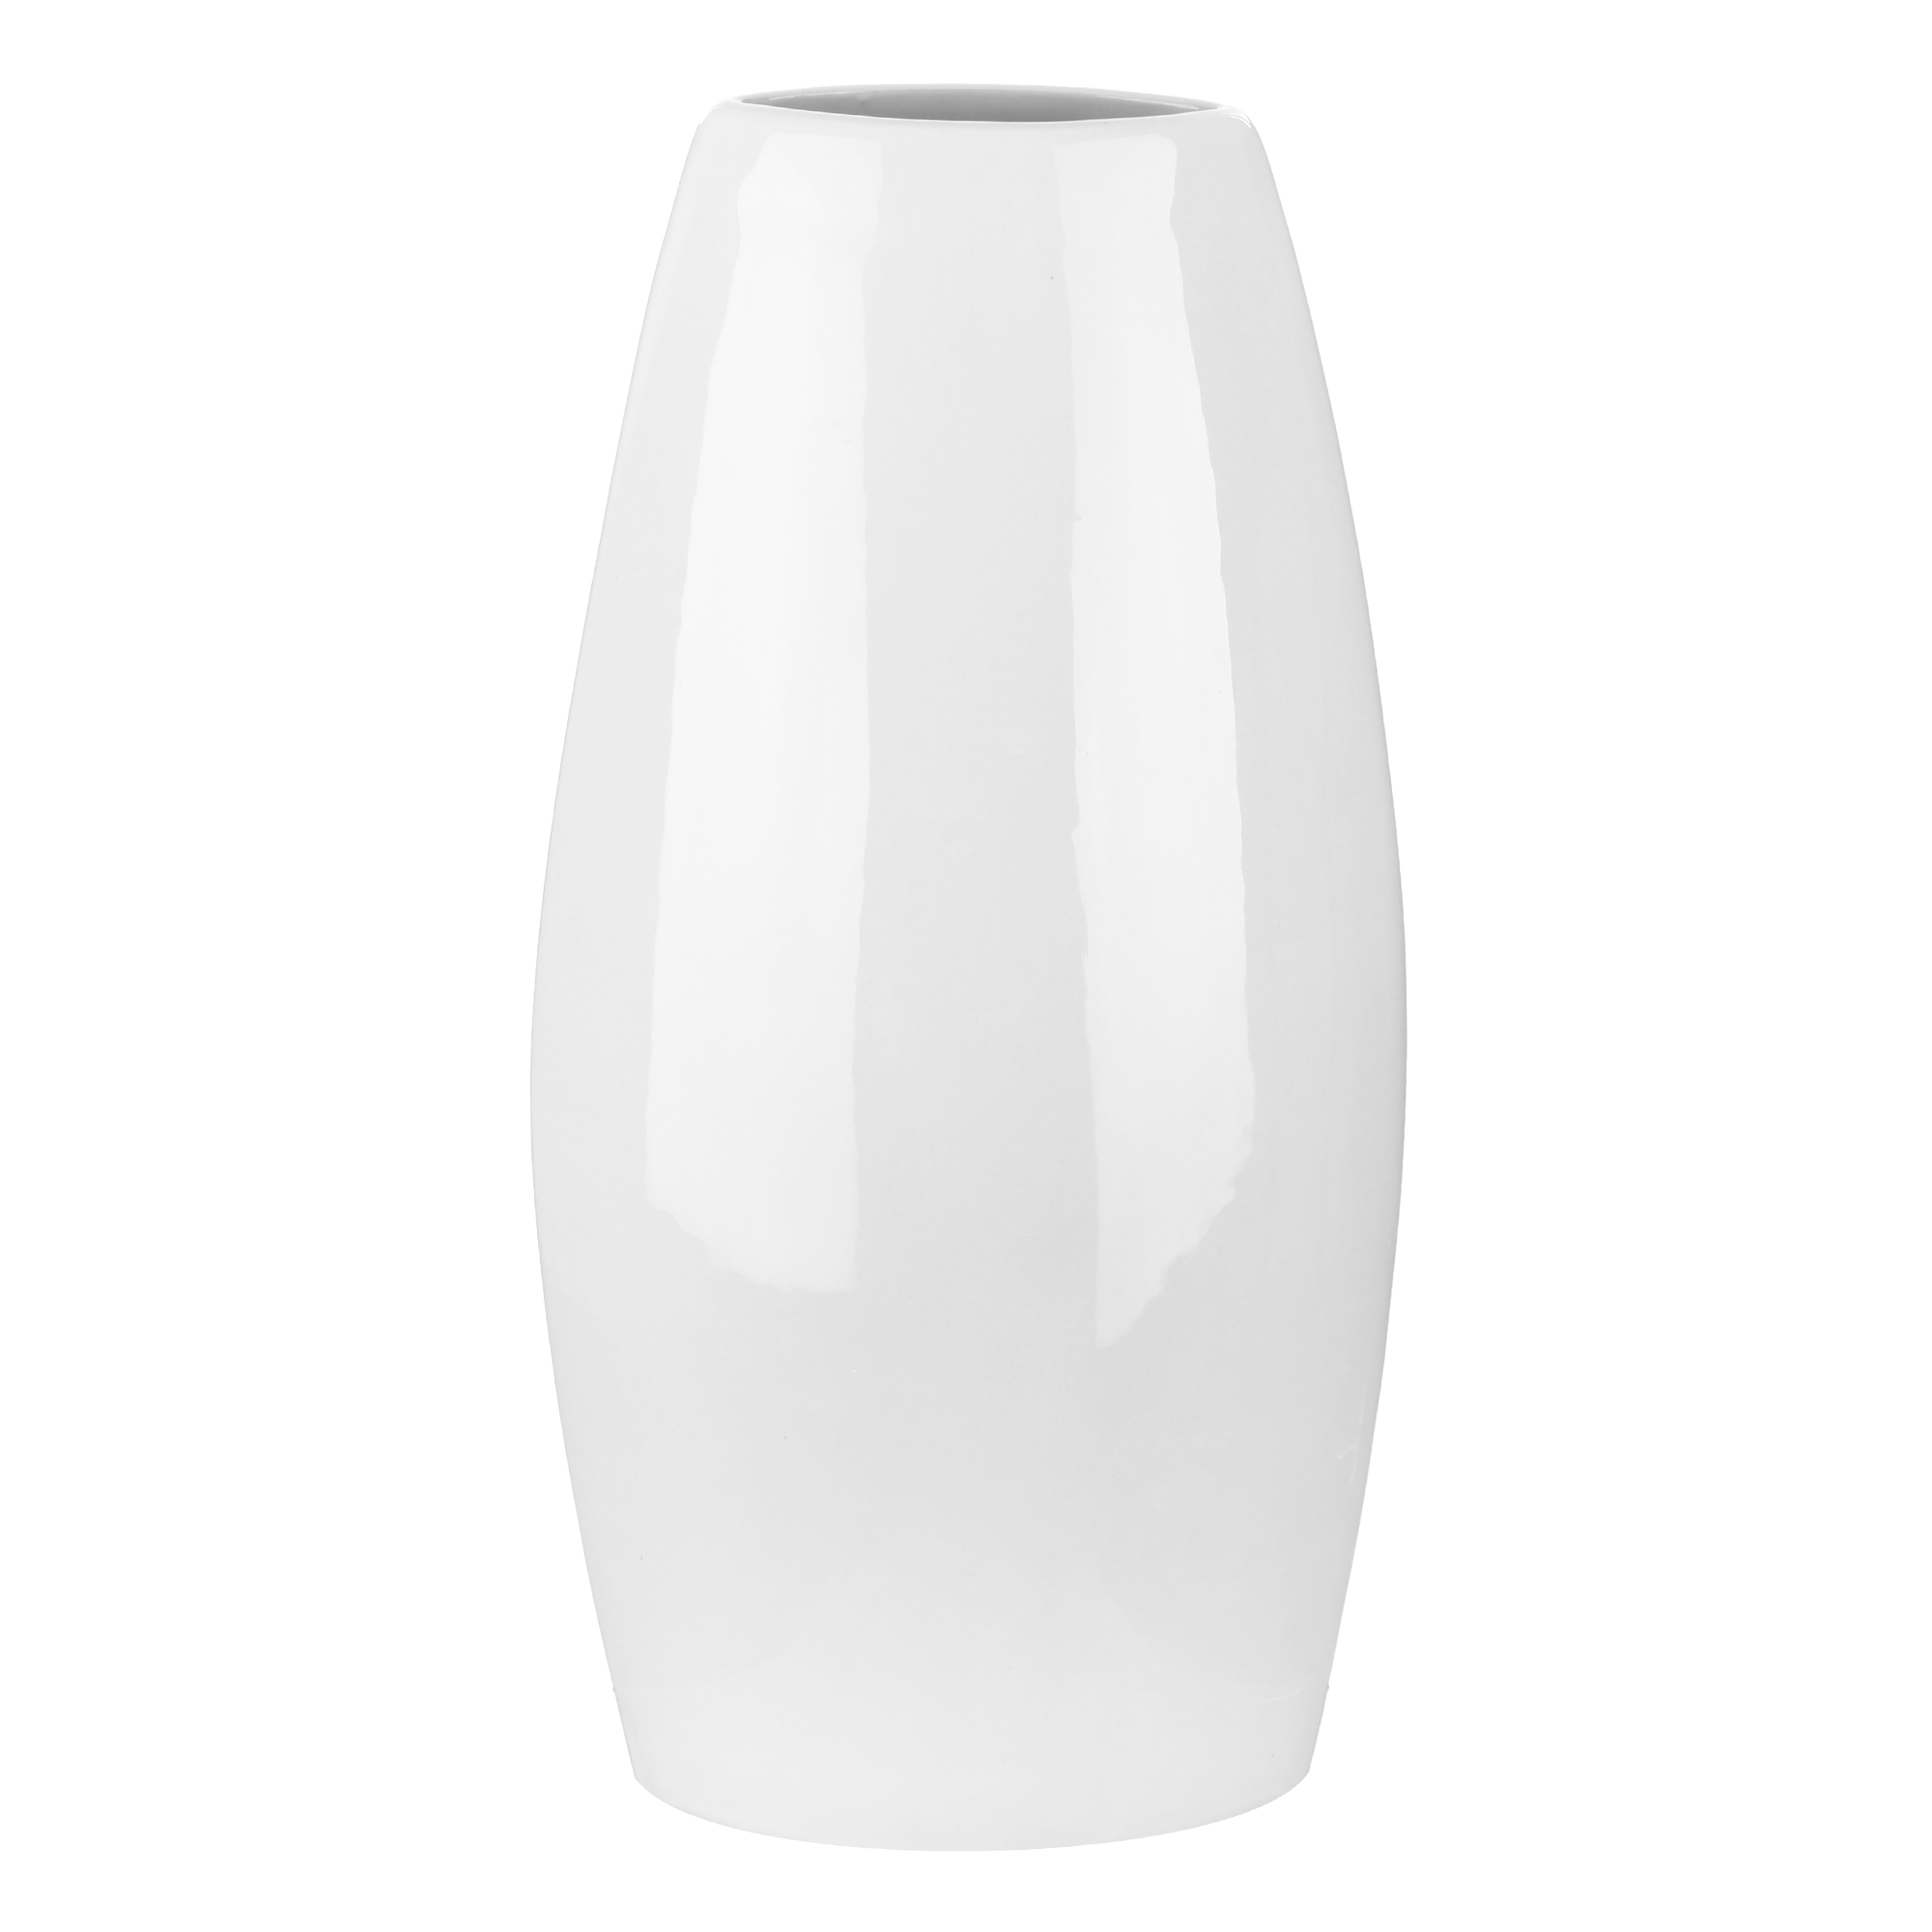 Керамическая ваза Porc-сeramic Медея 15х23 см ваза керамическая мечта б porc сeramic